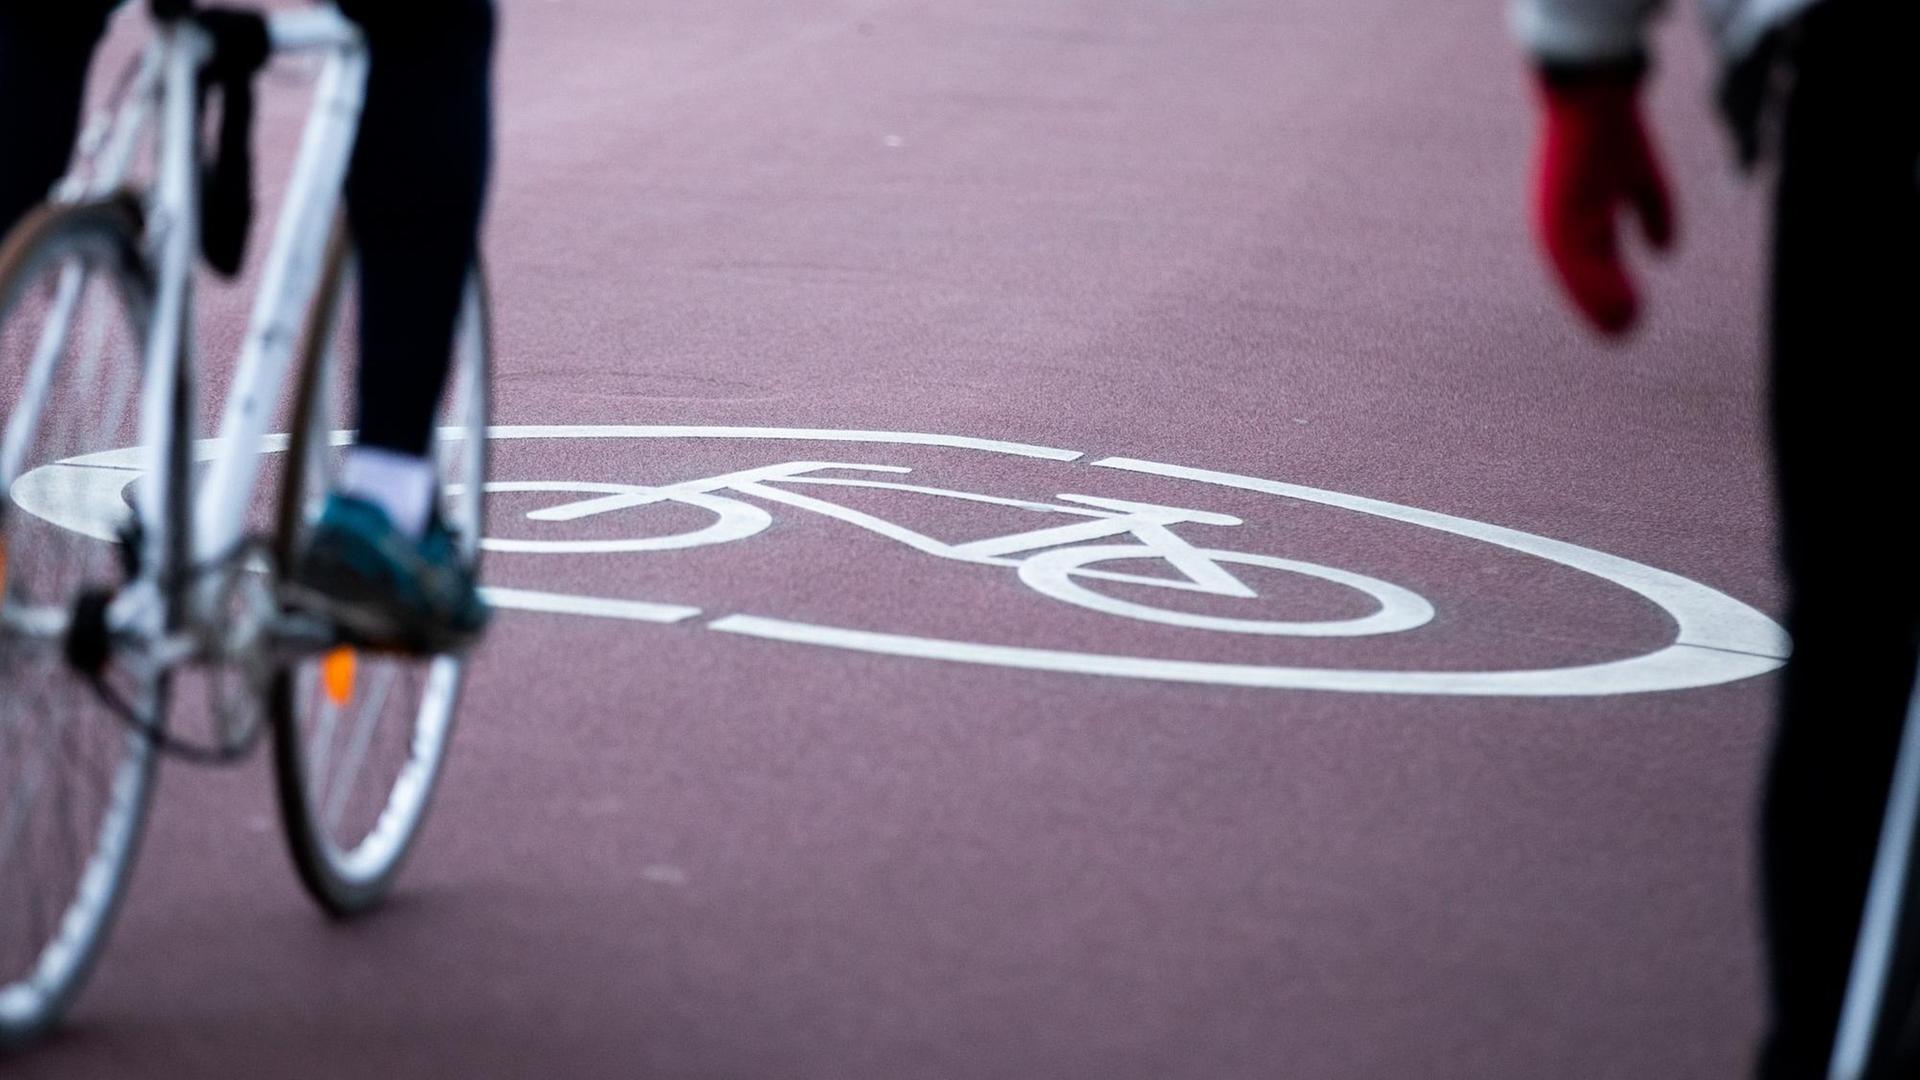 Ein Fahrradfahrer befährt eine Fahrradstraße, auf dem Asphalt ist ein Fahrradsymbol zu sehen.